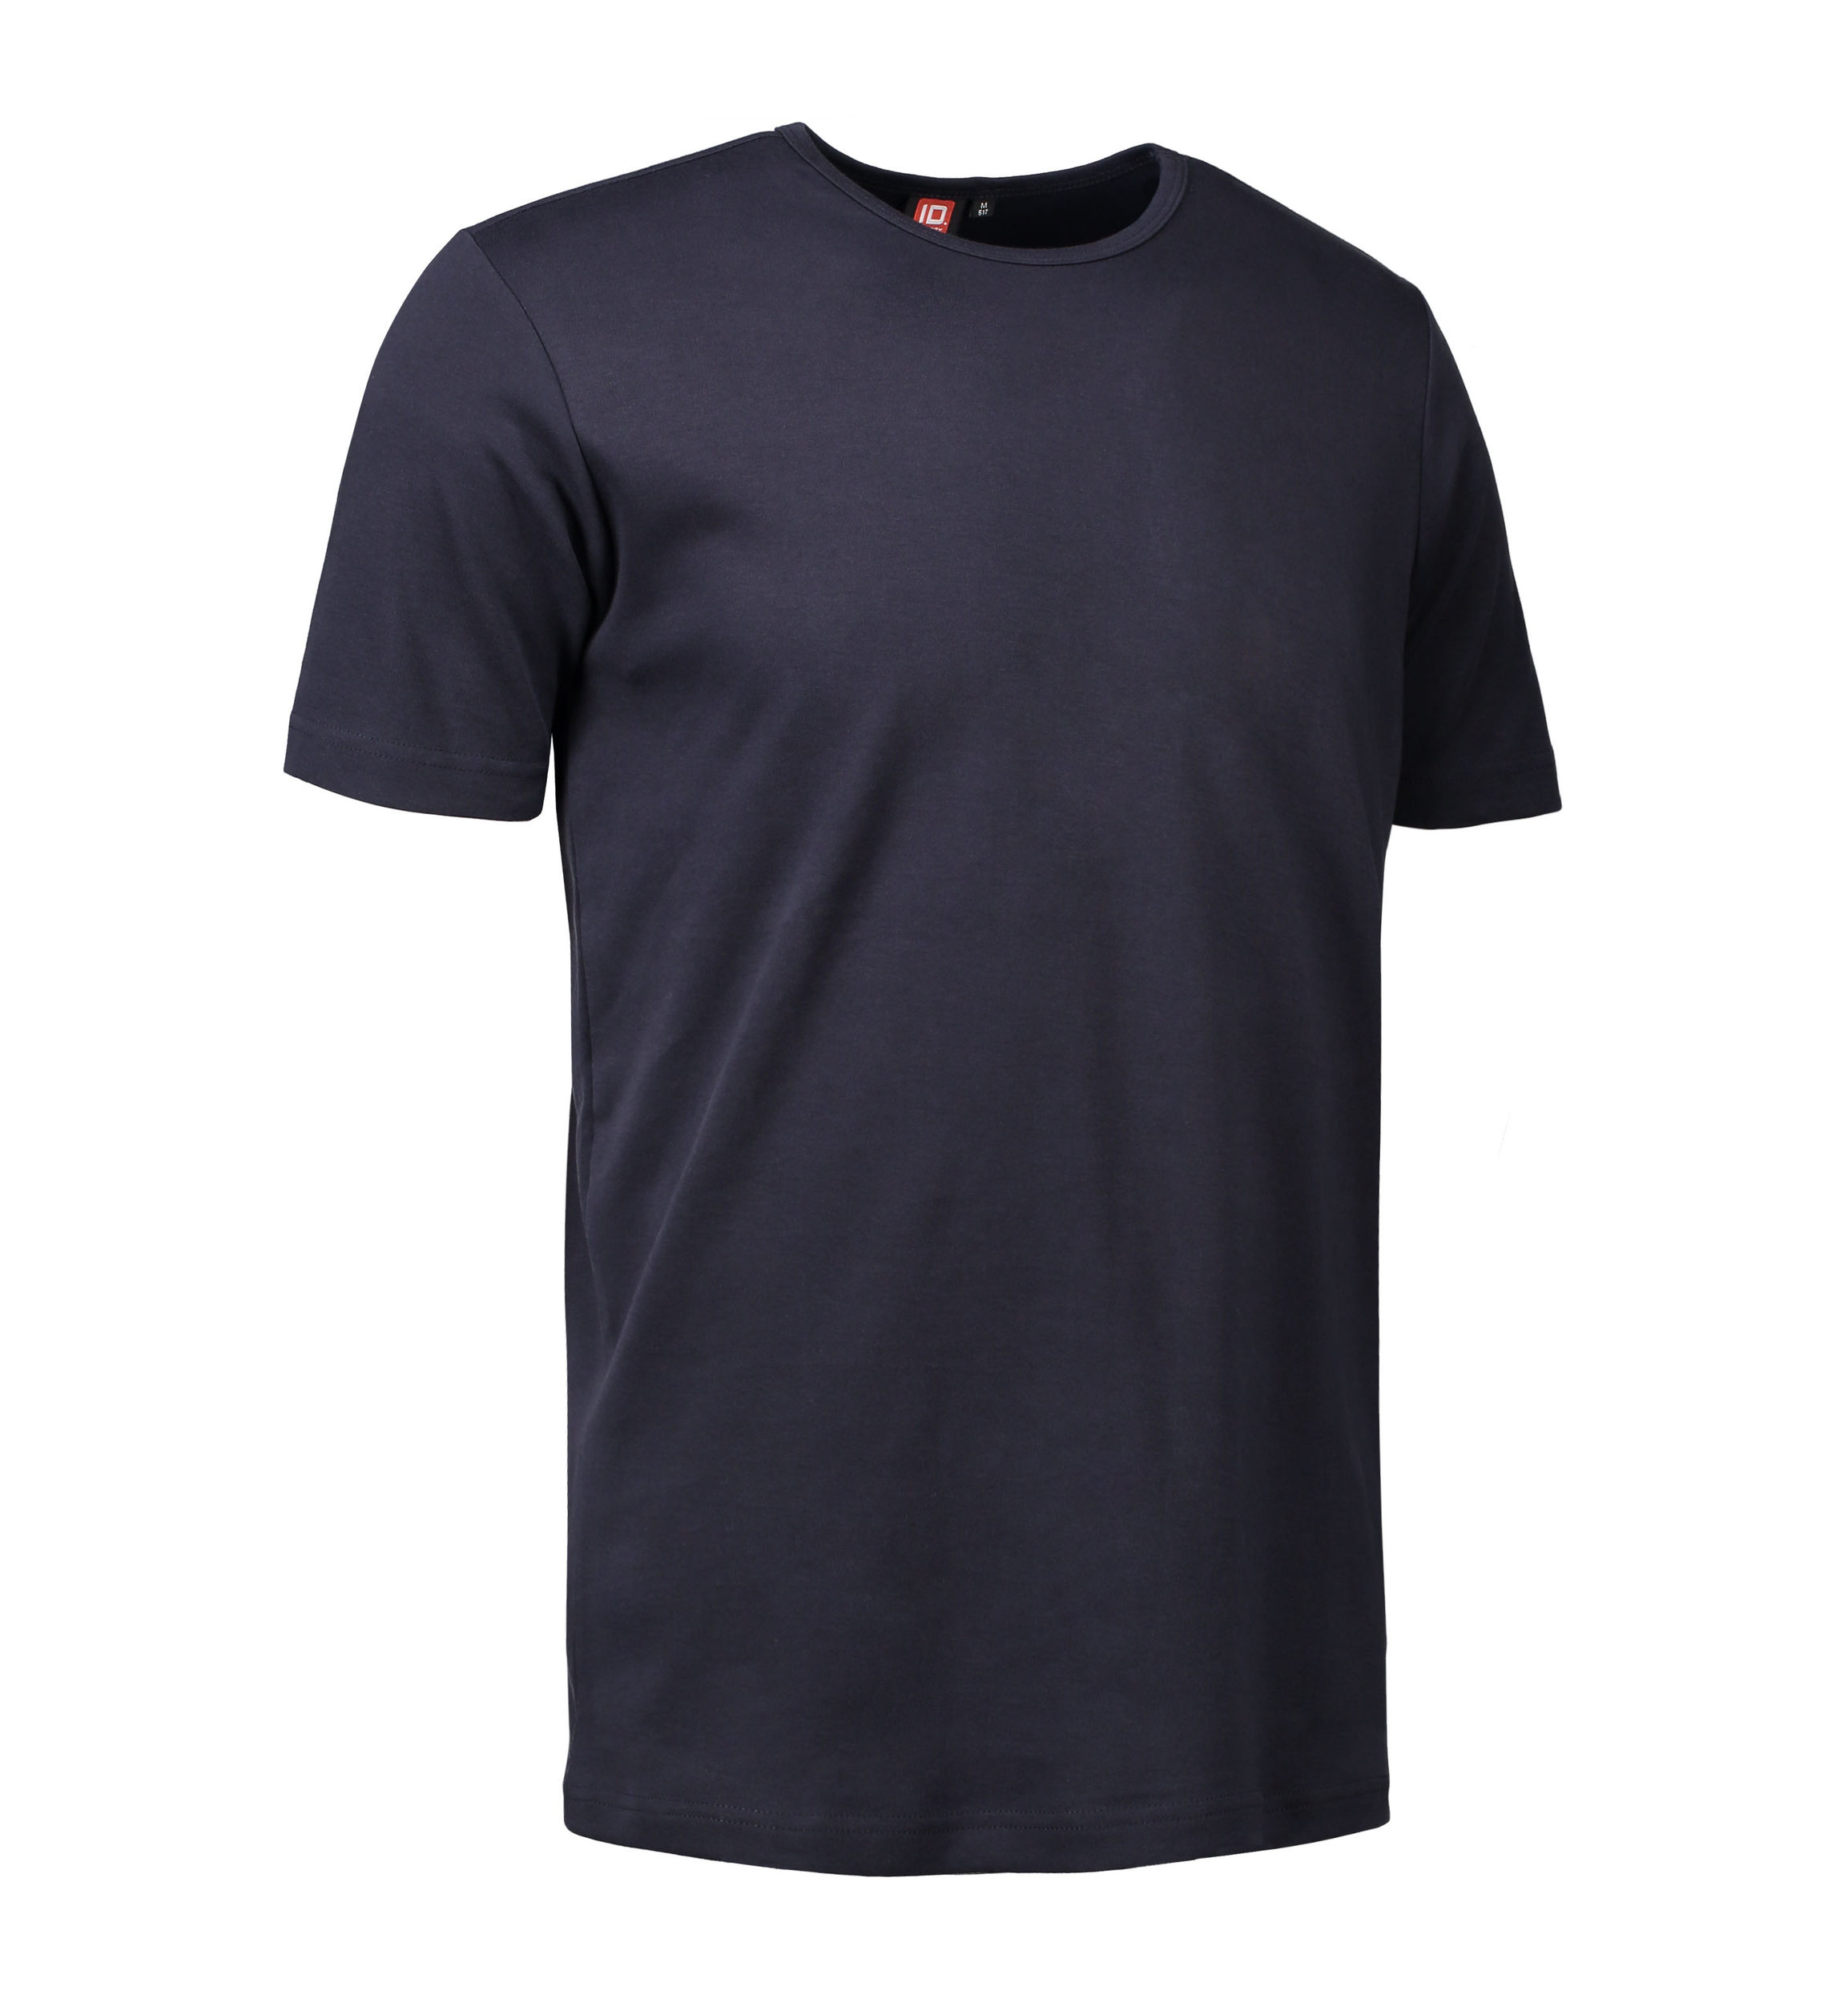 Billede af Navy t-shirt med rund hals til mænd - 2XL hos Sygeplejebutikken.dk